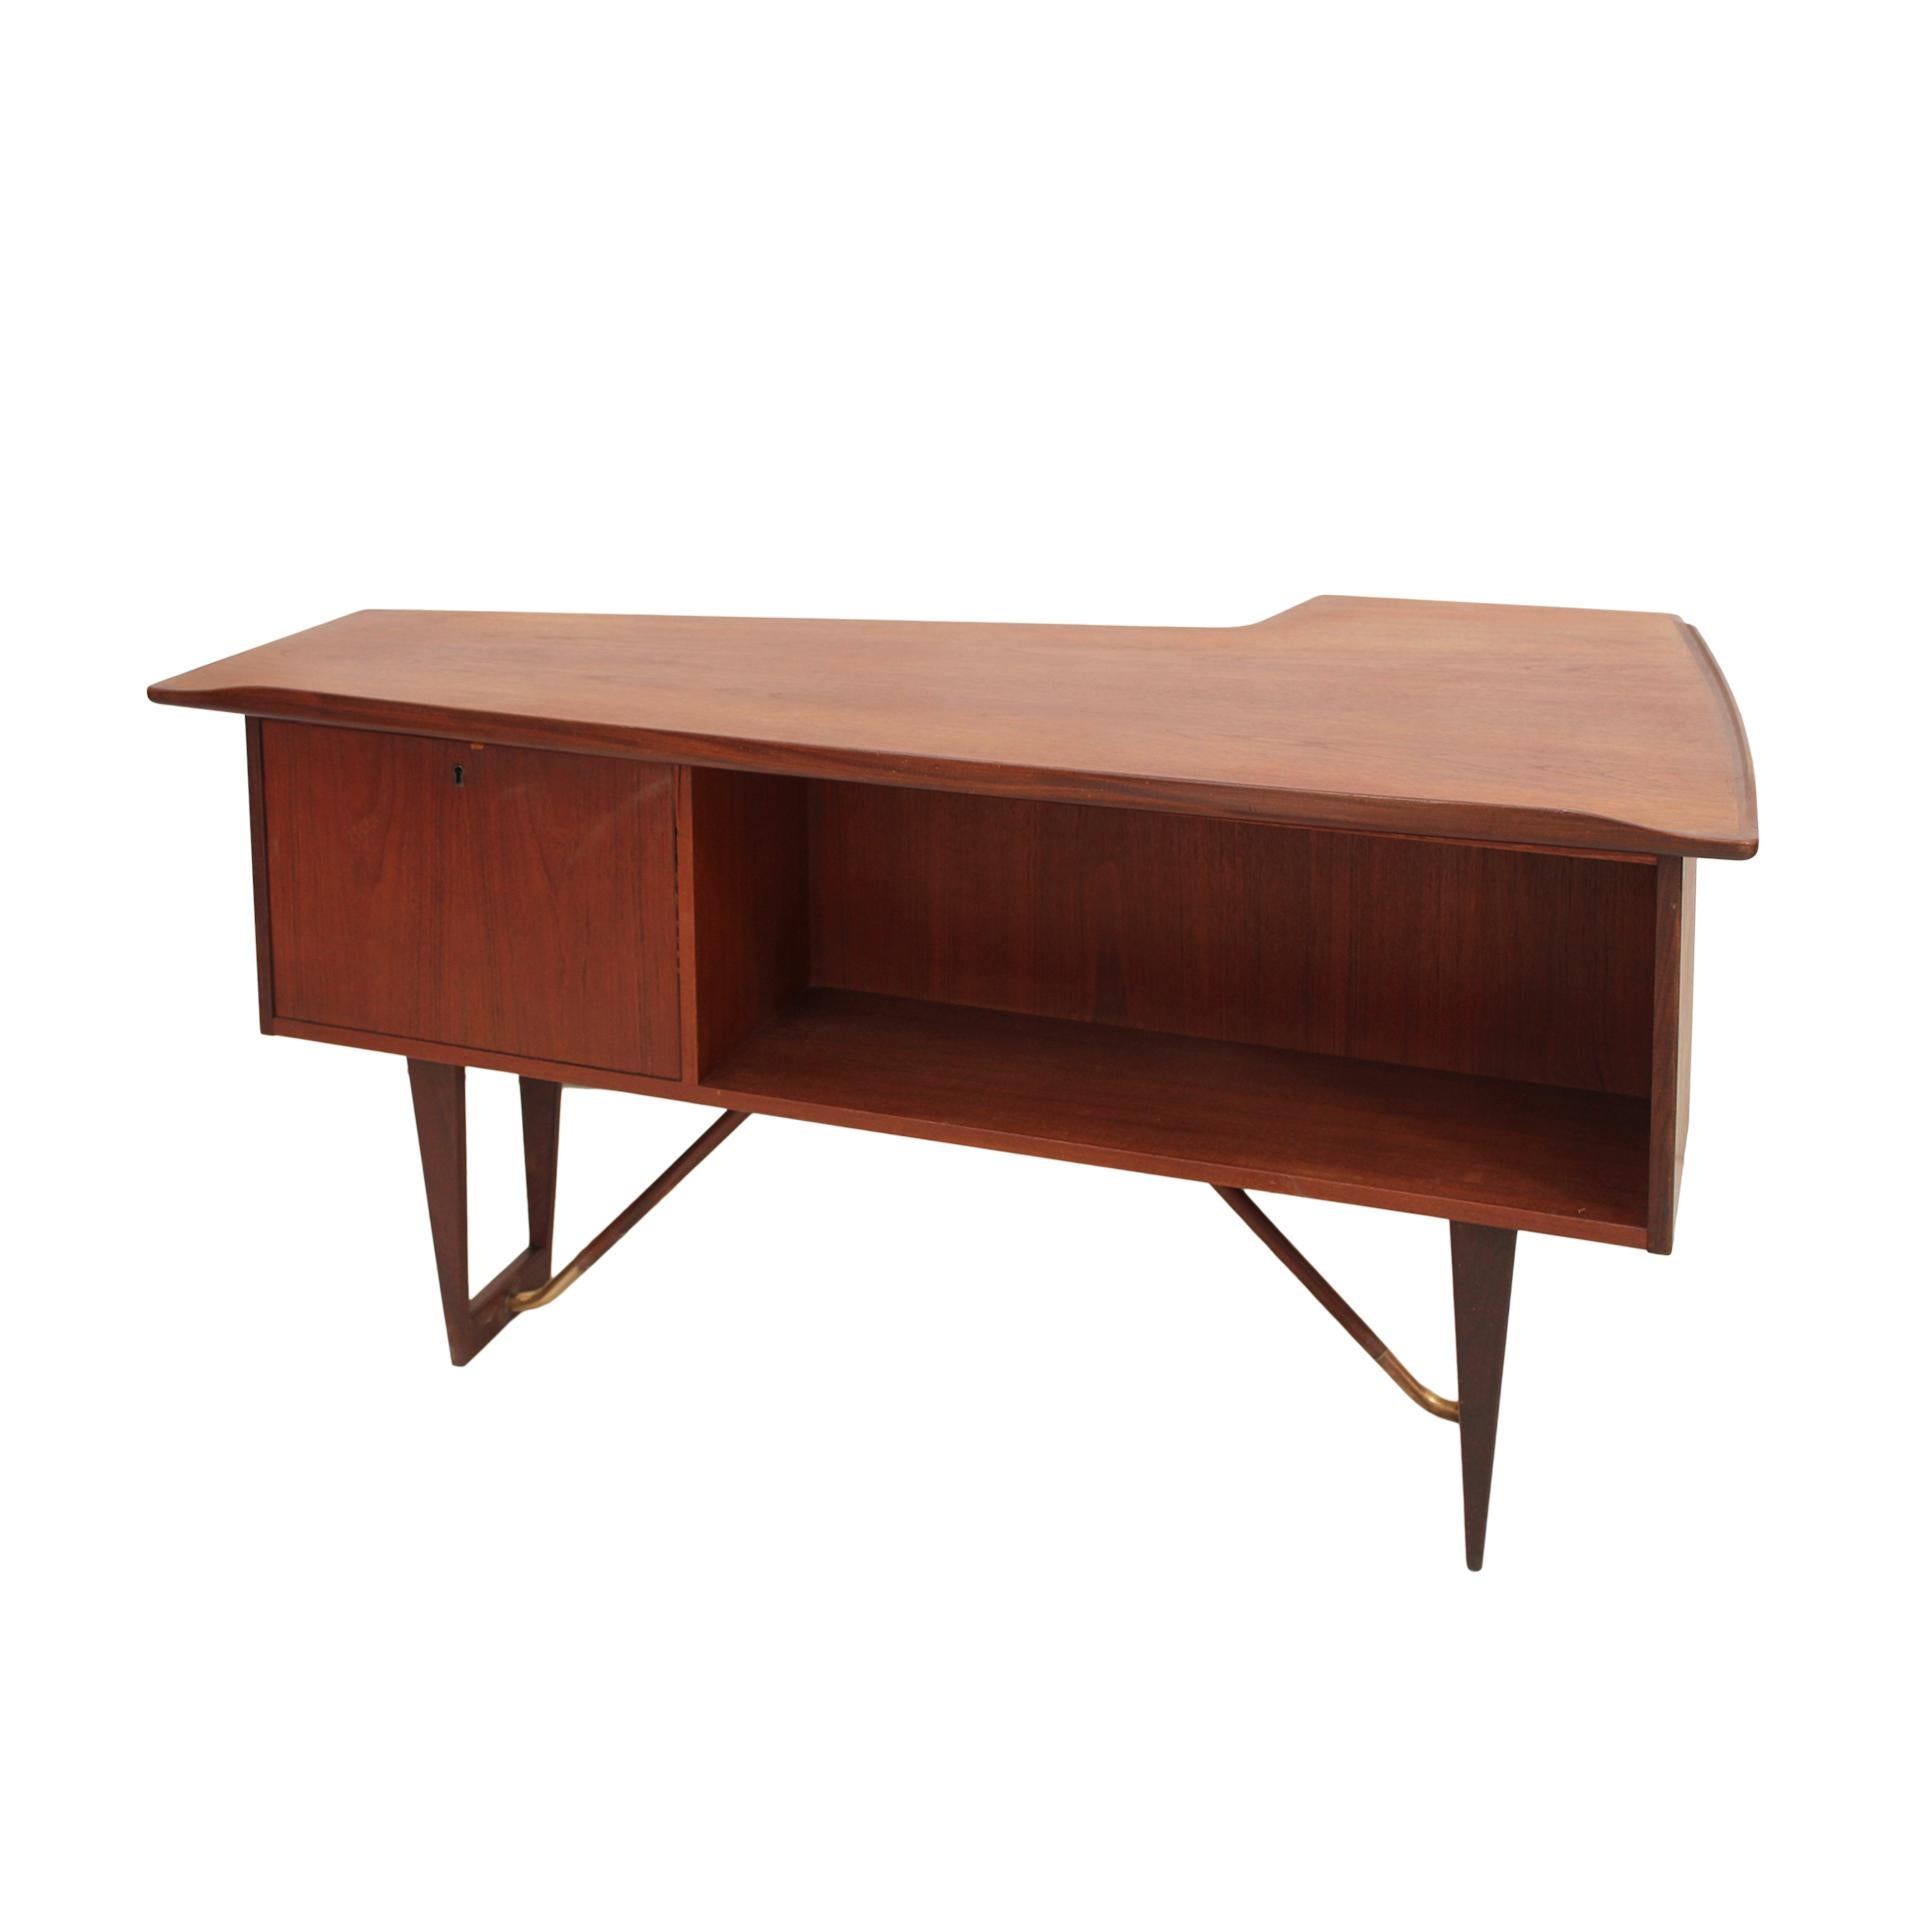 Danish Mid-Century Modern Solid Wooden Desk Designed by Arne Vodder Boomerang  For Sale